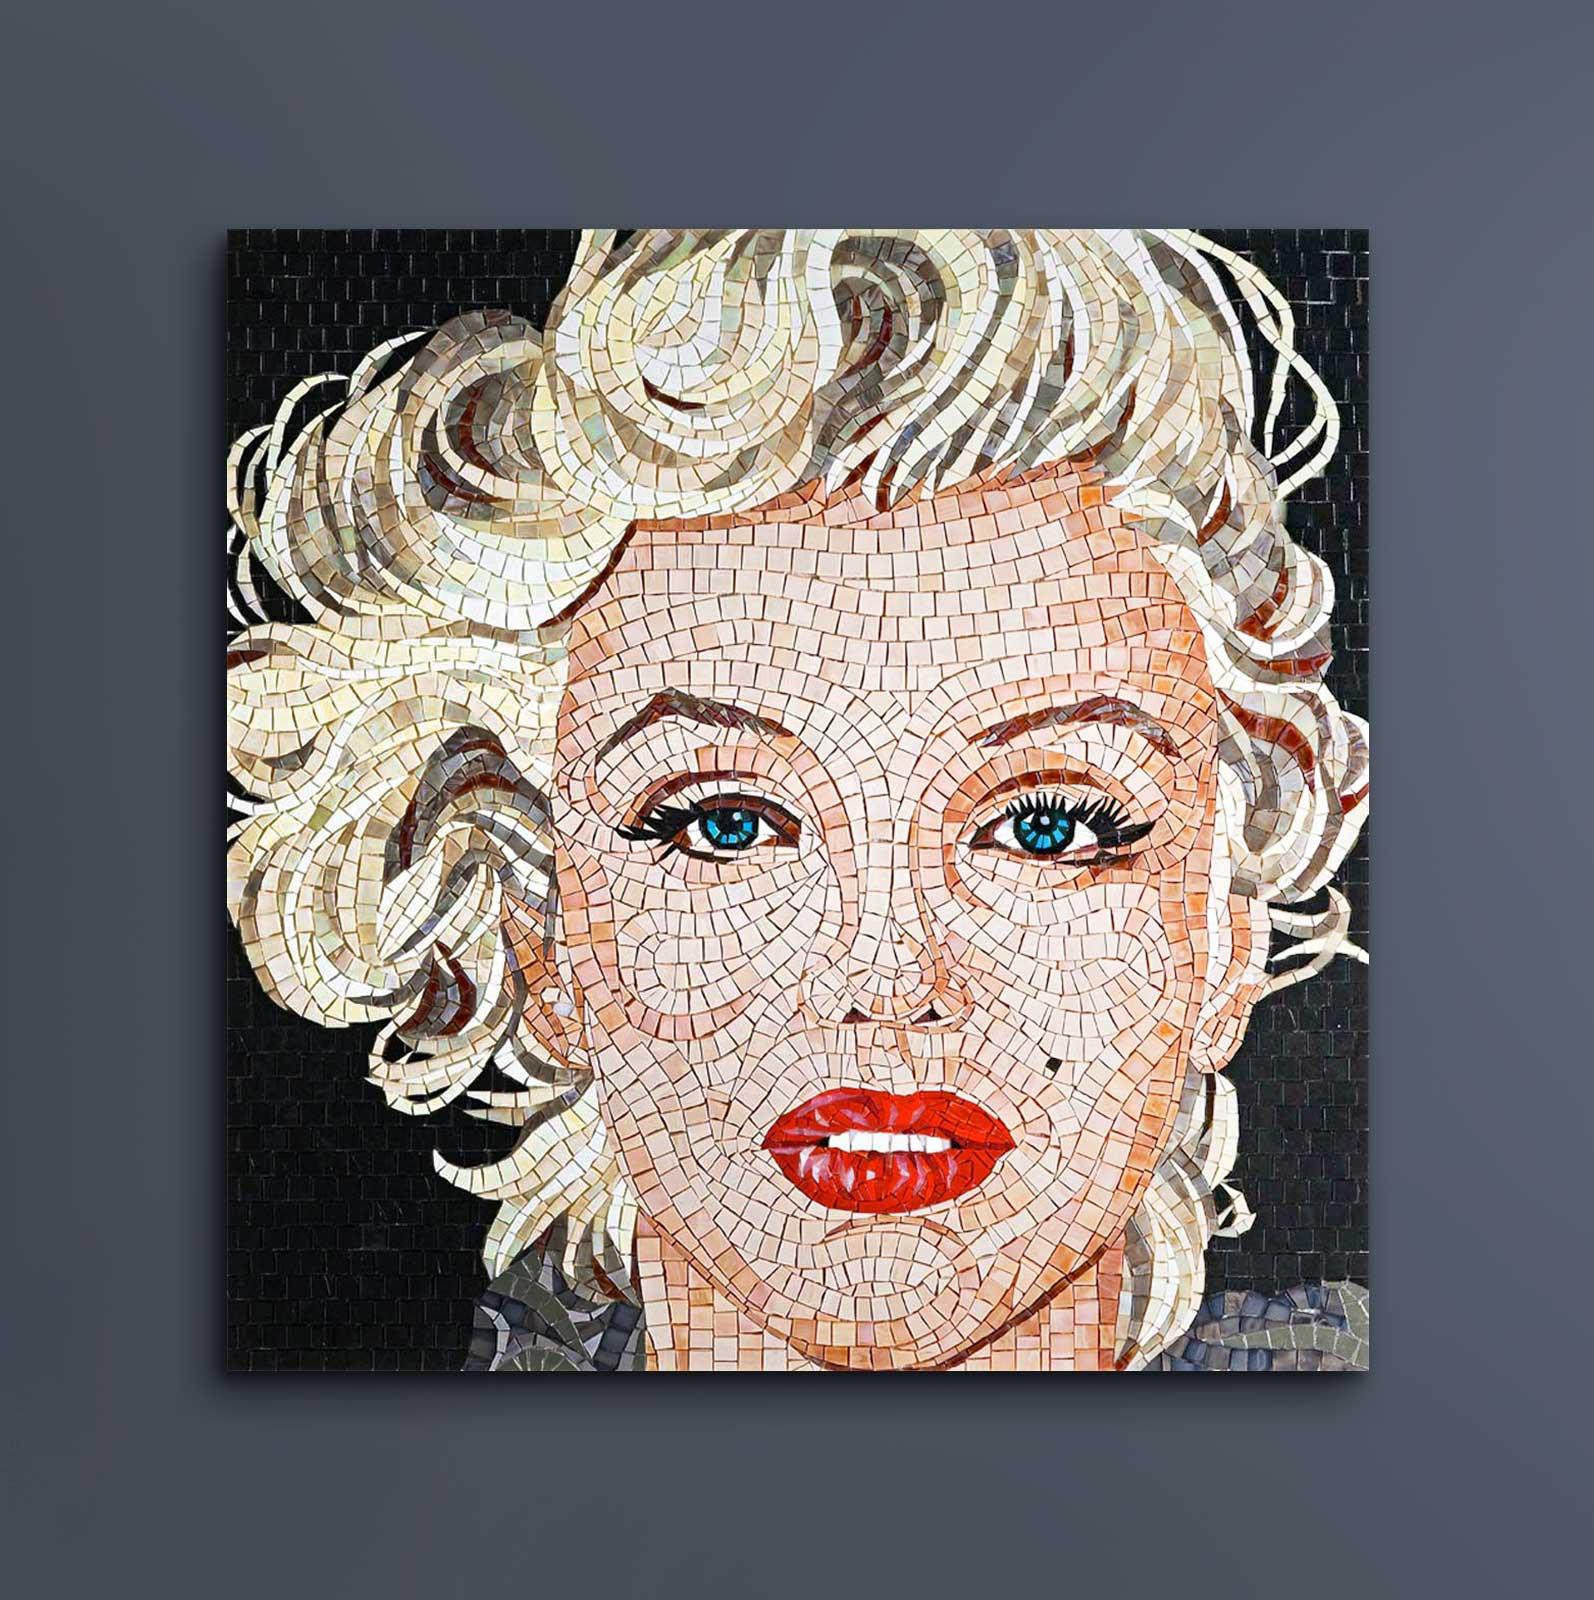 Cette mosaïque colorée d'inspiration pop est une ode à la populaire et unique Marilyn Monroe. La Diva reste l'une des actrices les plus emblématiques du grand écran. Entourée d'éléments multicolores, Monroe pose sensuellement en regardant ses fans.